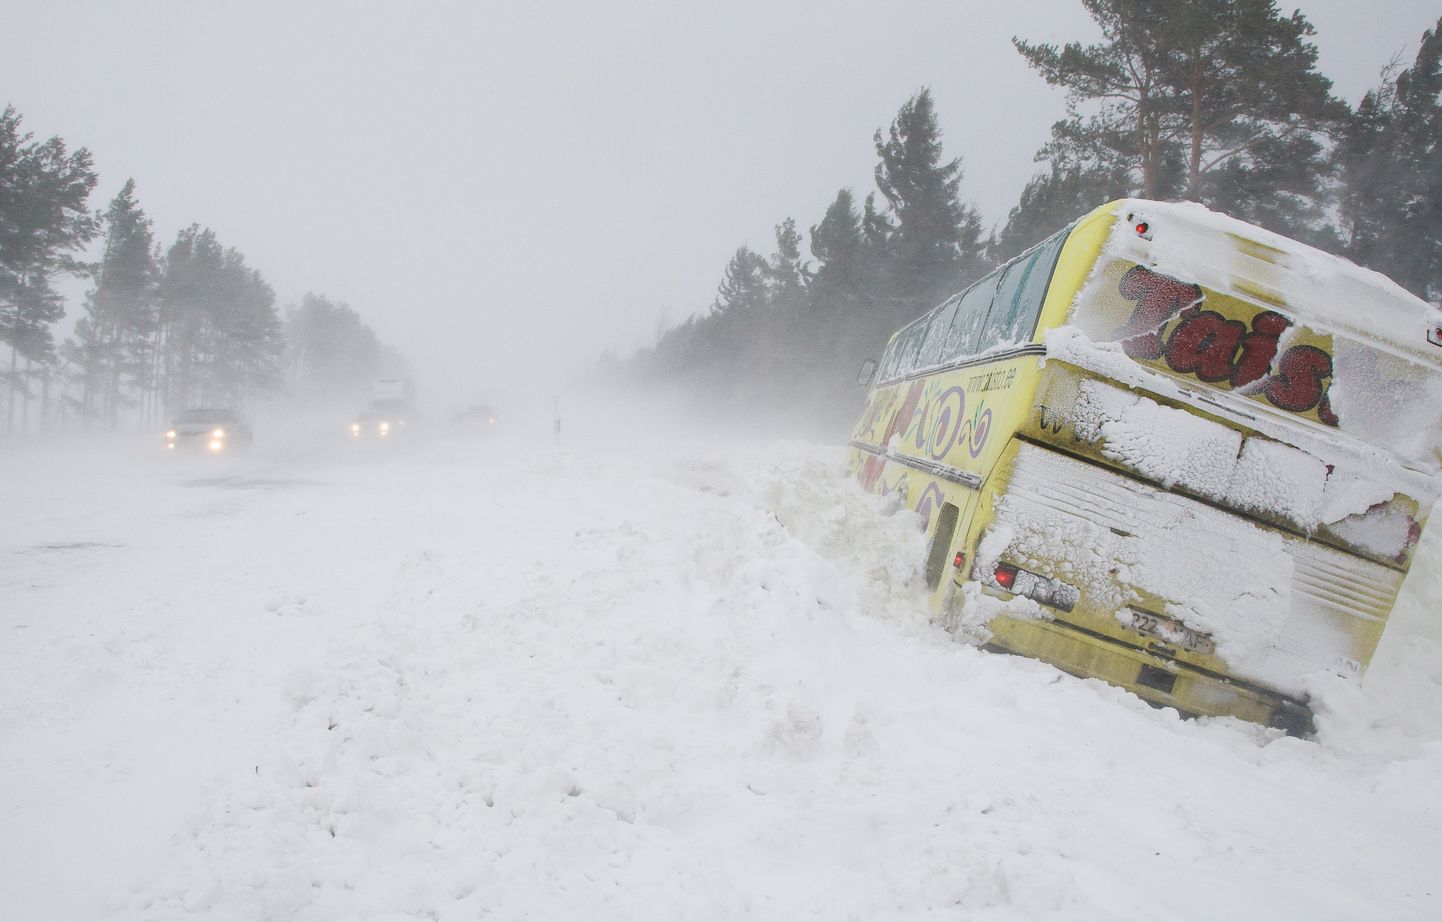 Подобная нынешней дорожная ситуация наблюдалась в декабре 2010 года, когда снежный шторм Моника тоже загонял в кювет автобусы. Но тогда дело ограничилось одной сильной метелью, а нынешней зимой их было уже три.